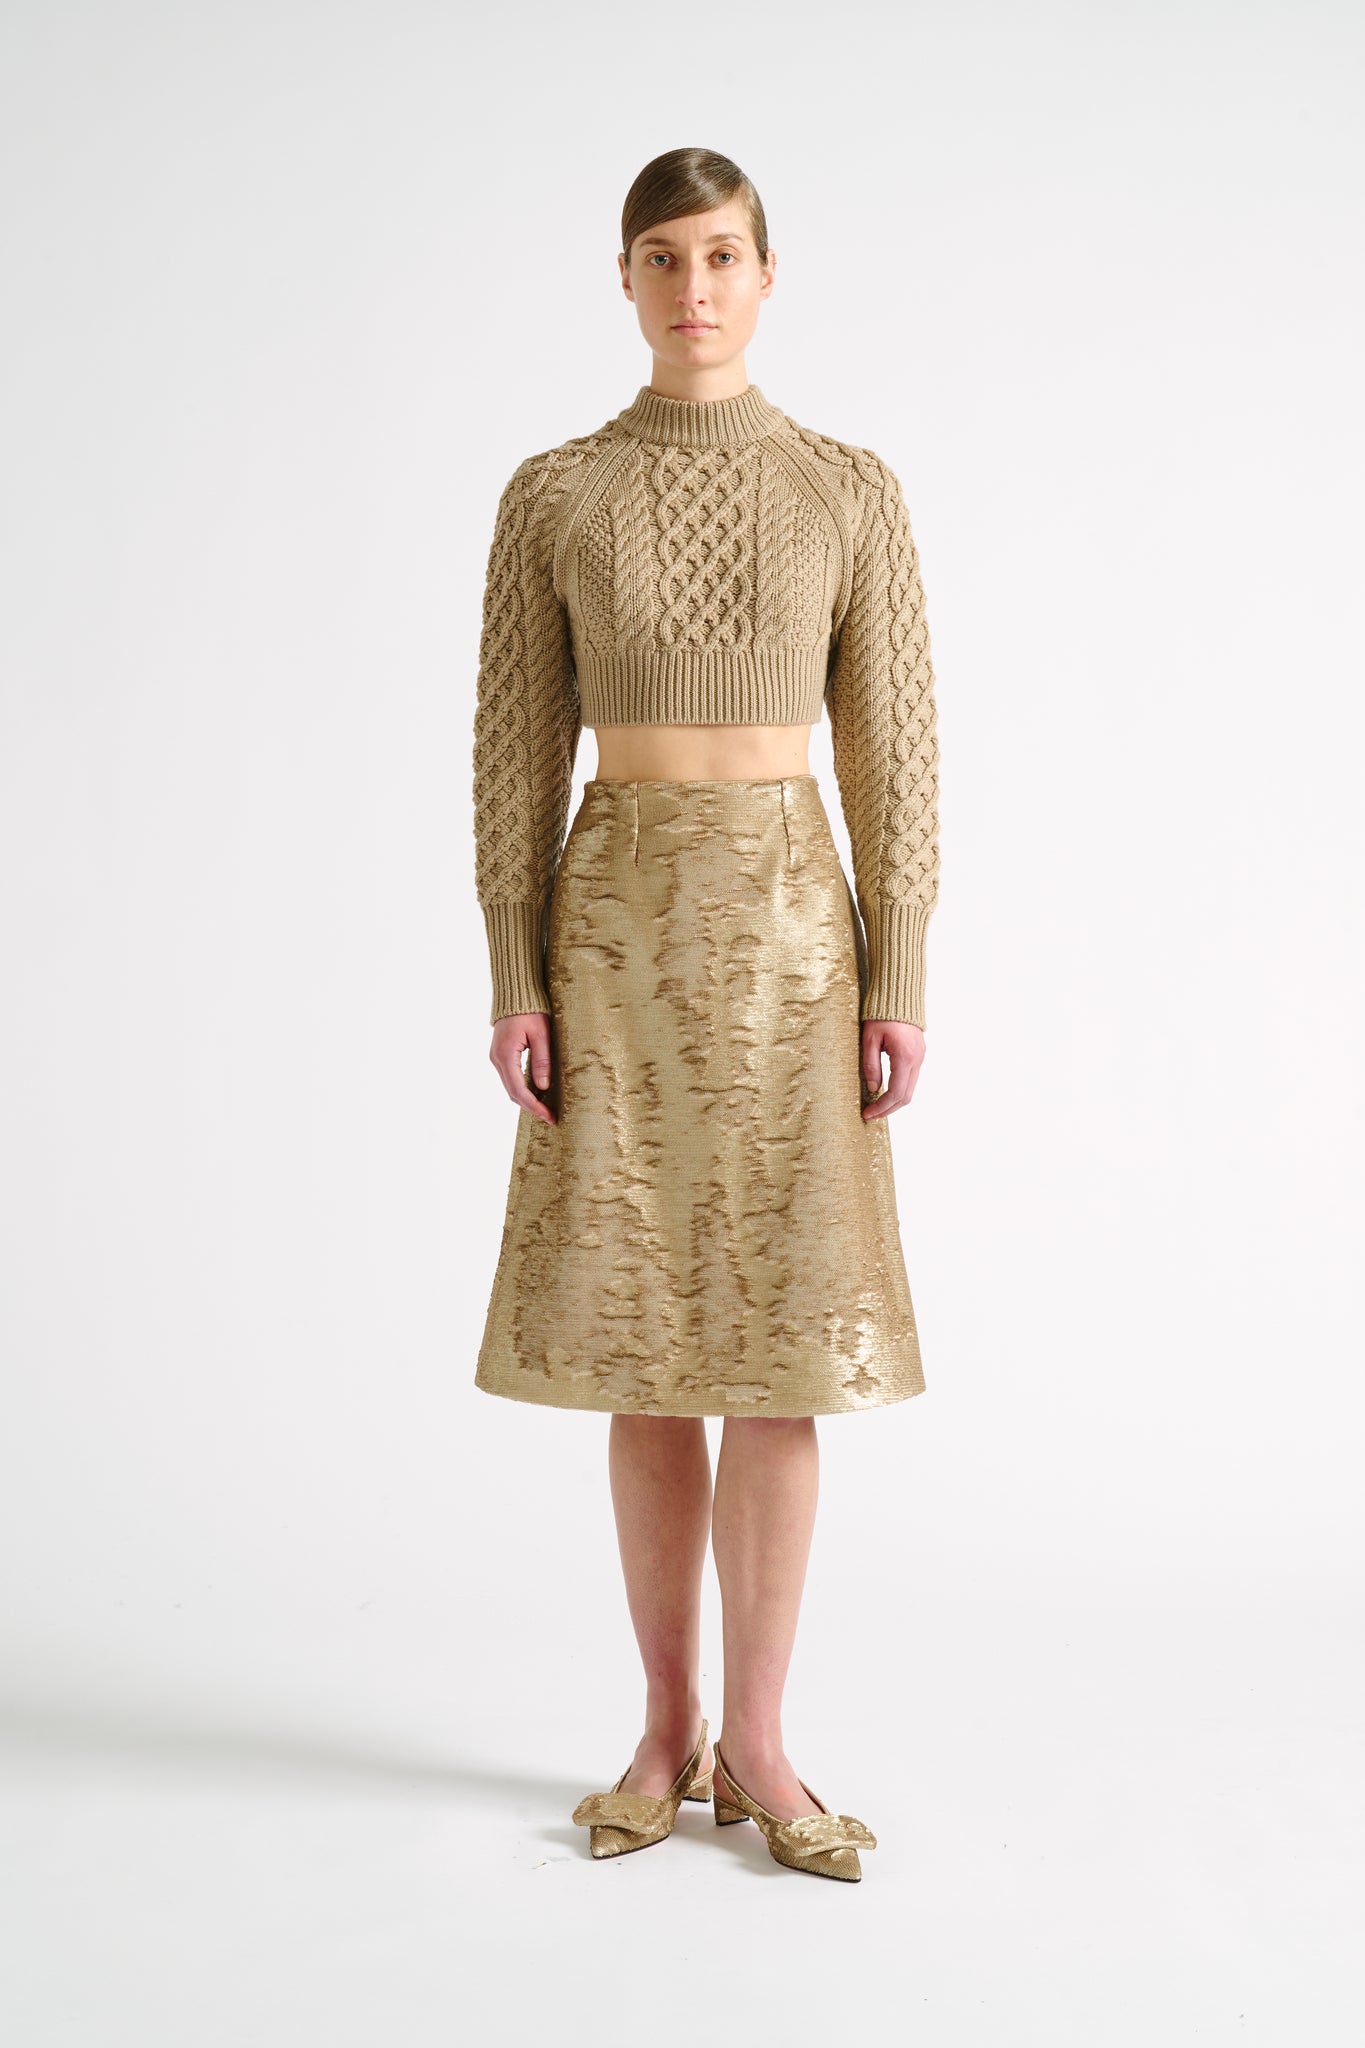 Davina Skirt | Gold Sequin A-Line Skirt | Emilia Wickstead